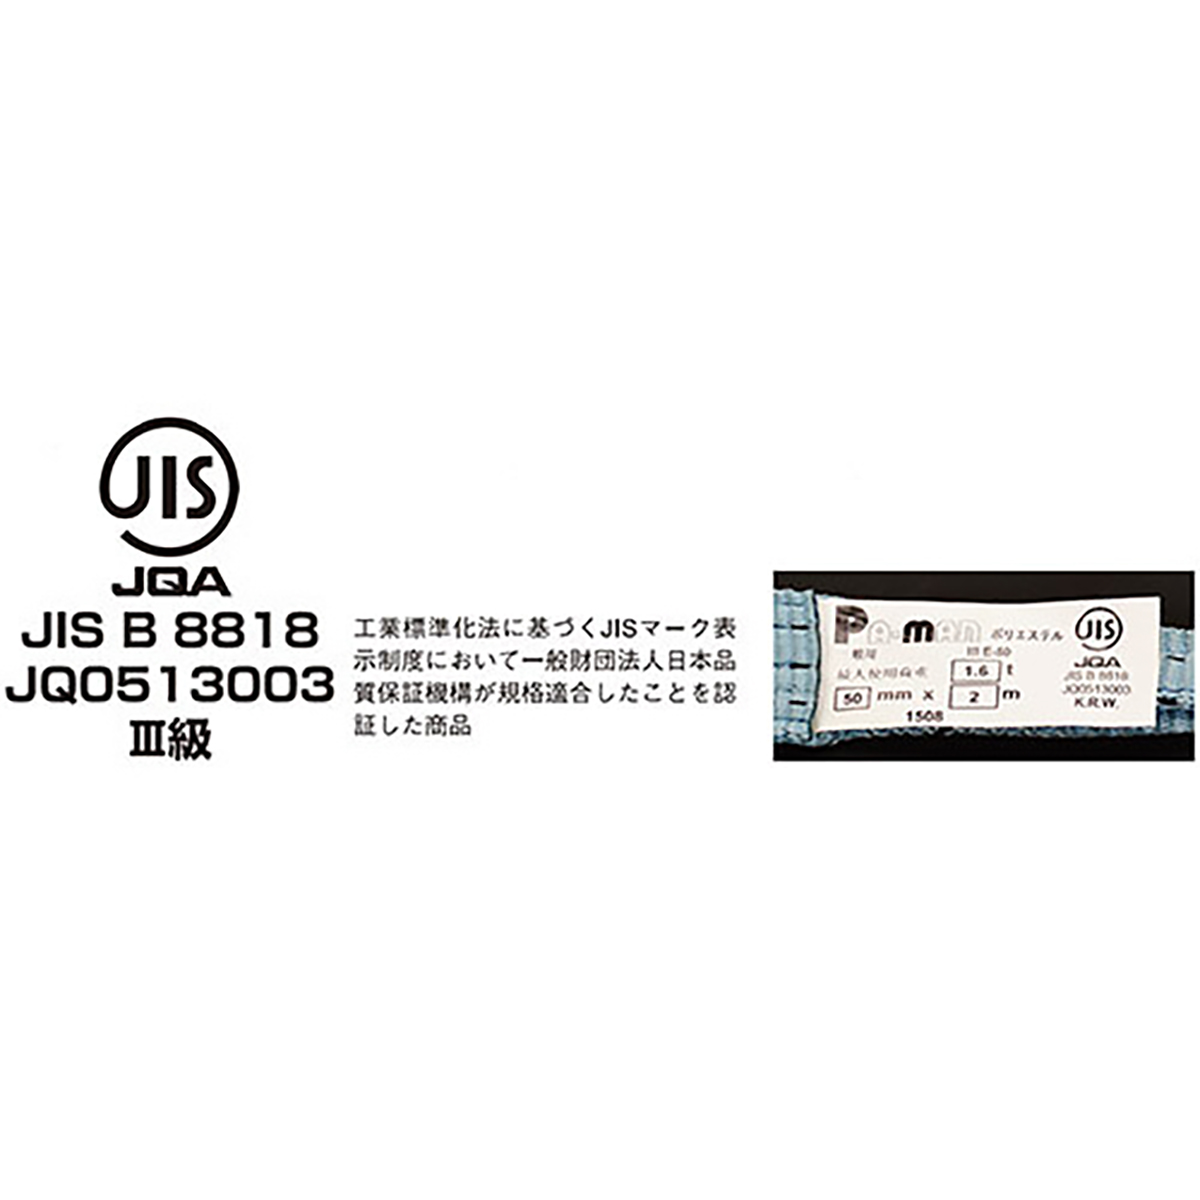 ポリベルトスリング JIS III級 ソフト面付 巾50mm 2m 1本